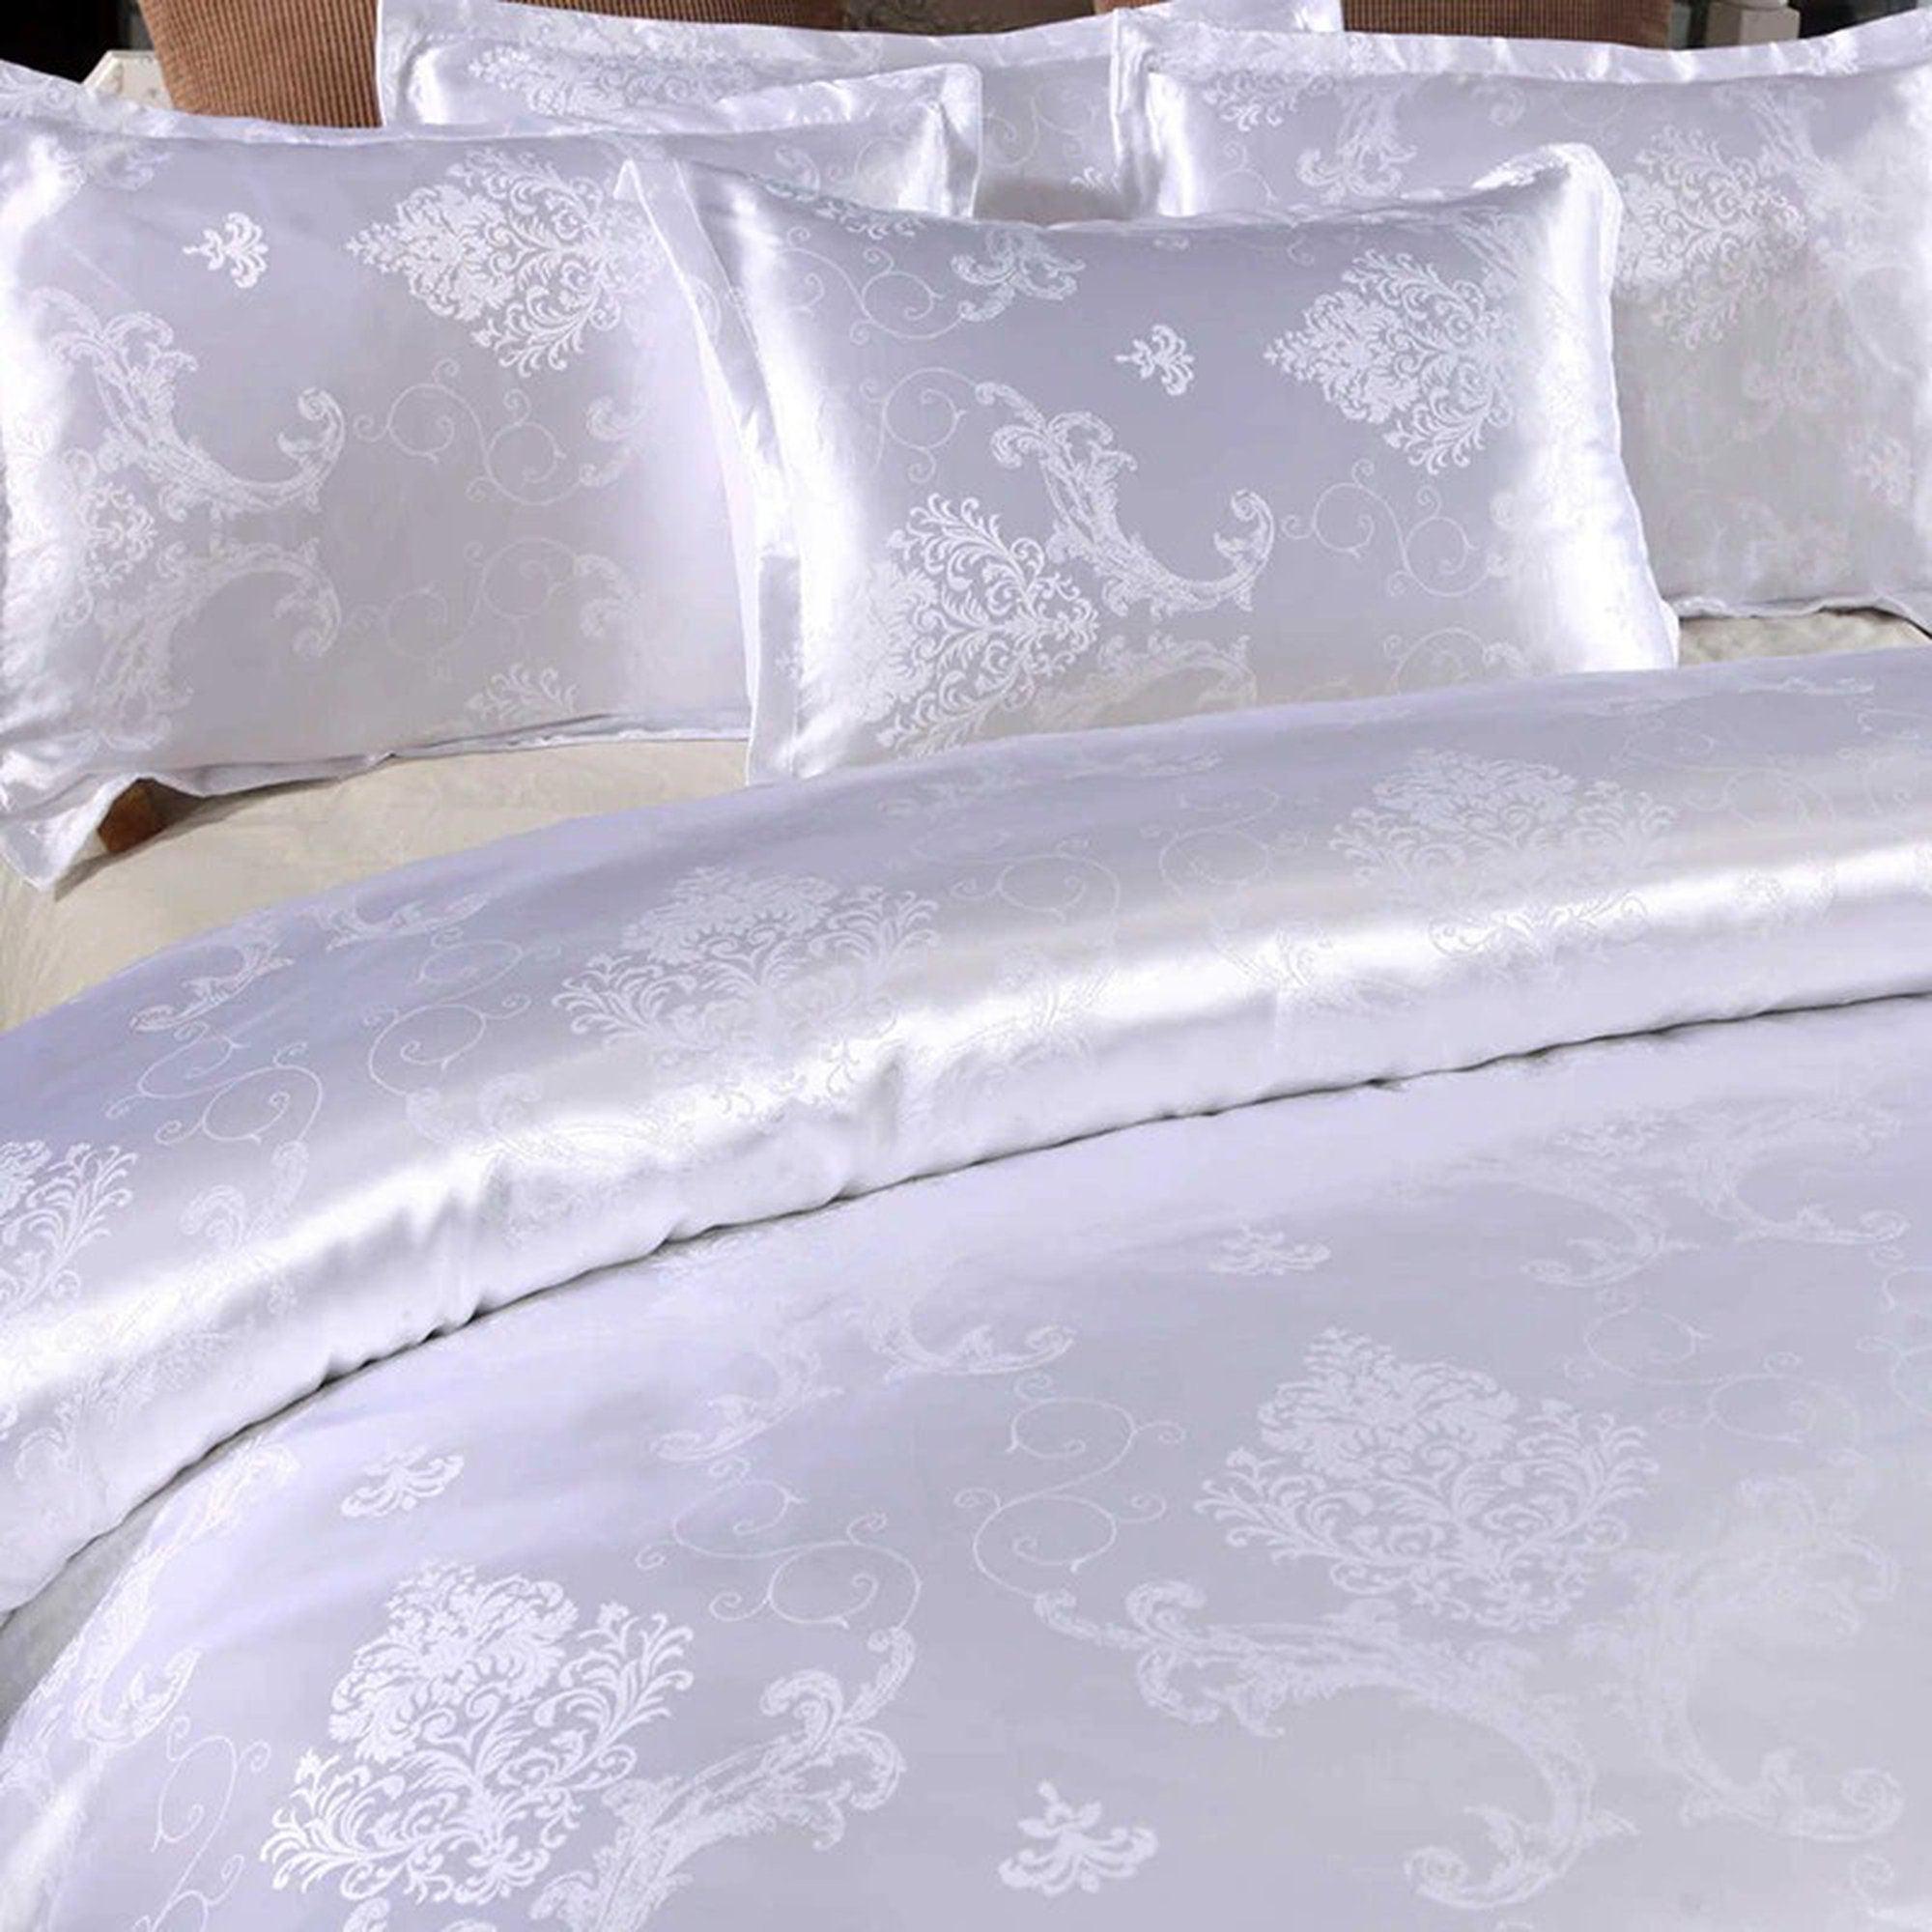 daintyduvet Luxury Bedding made with Silky White Jacquard Fabric, Damask Duvet Cover Set, Designer Bedding, Aesthetic Duvet King Queen Full Twin